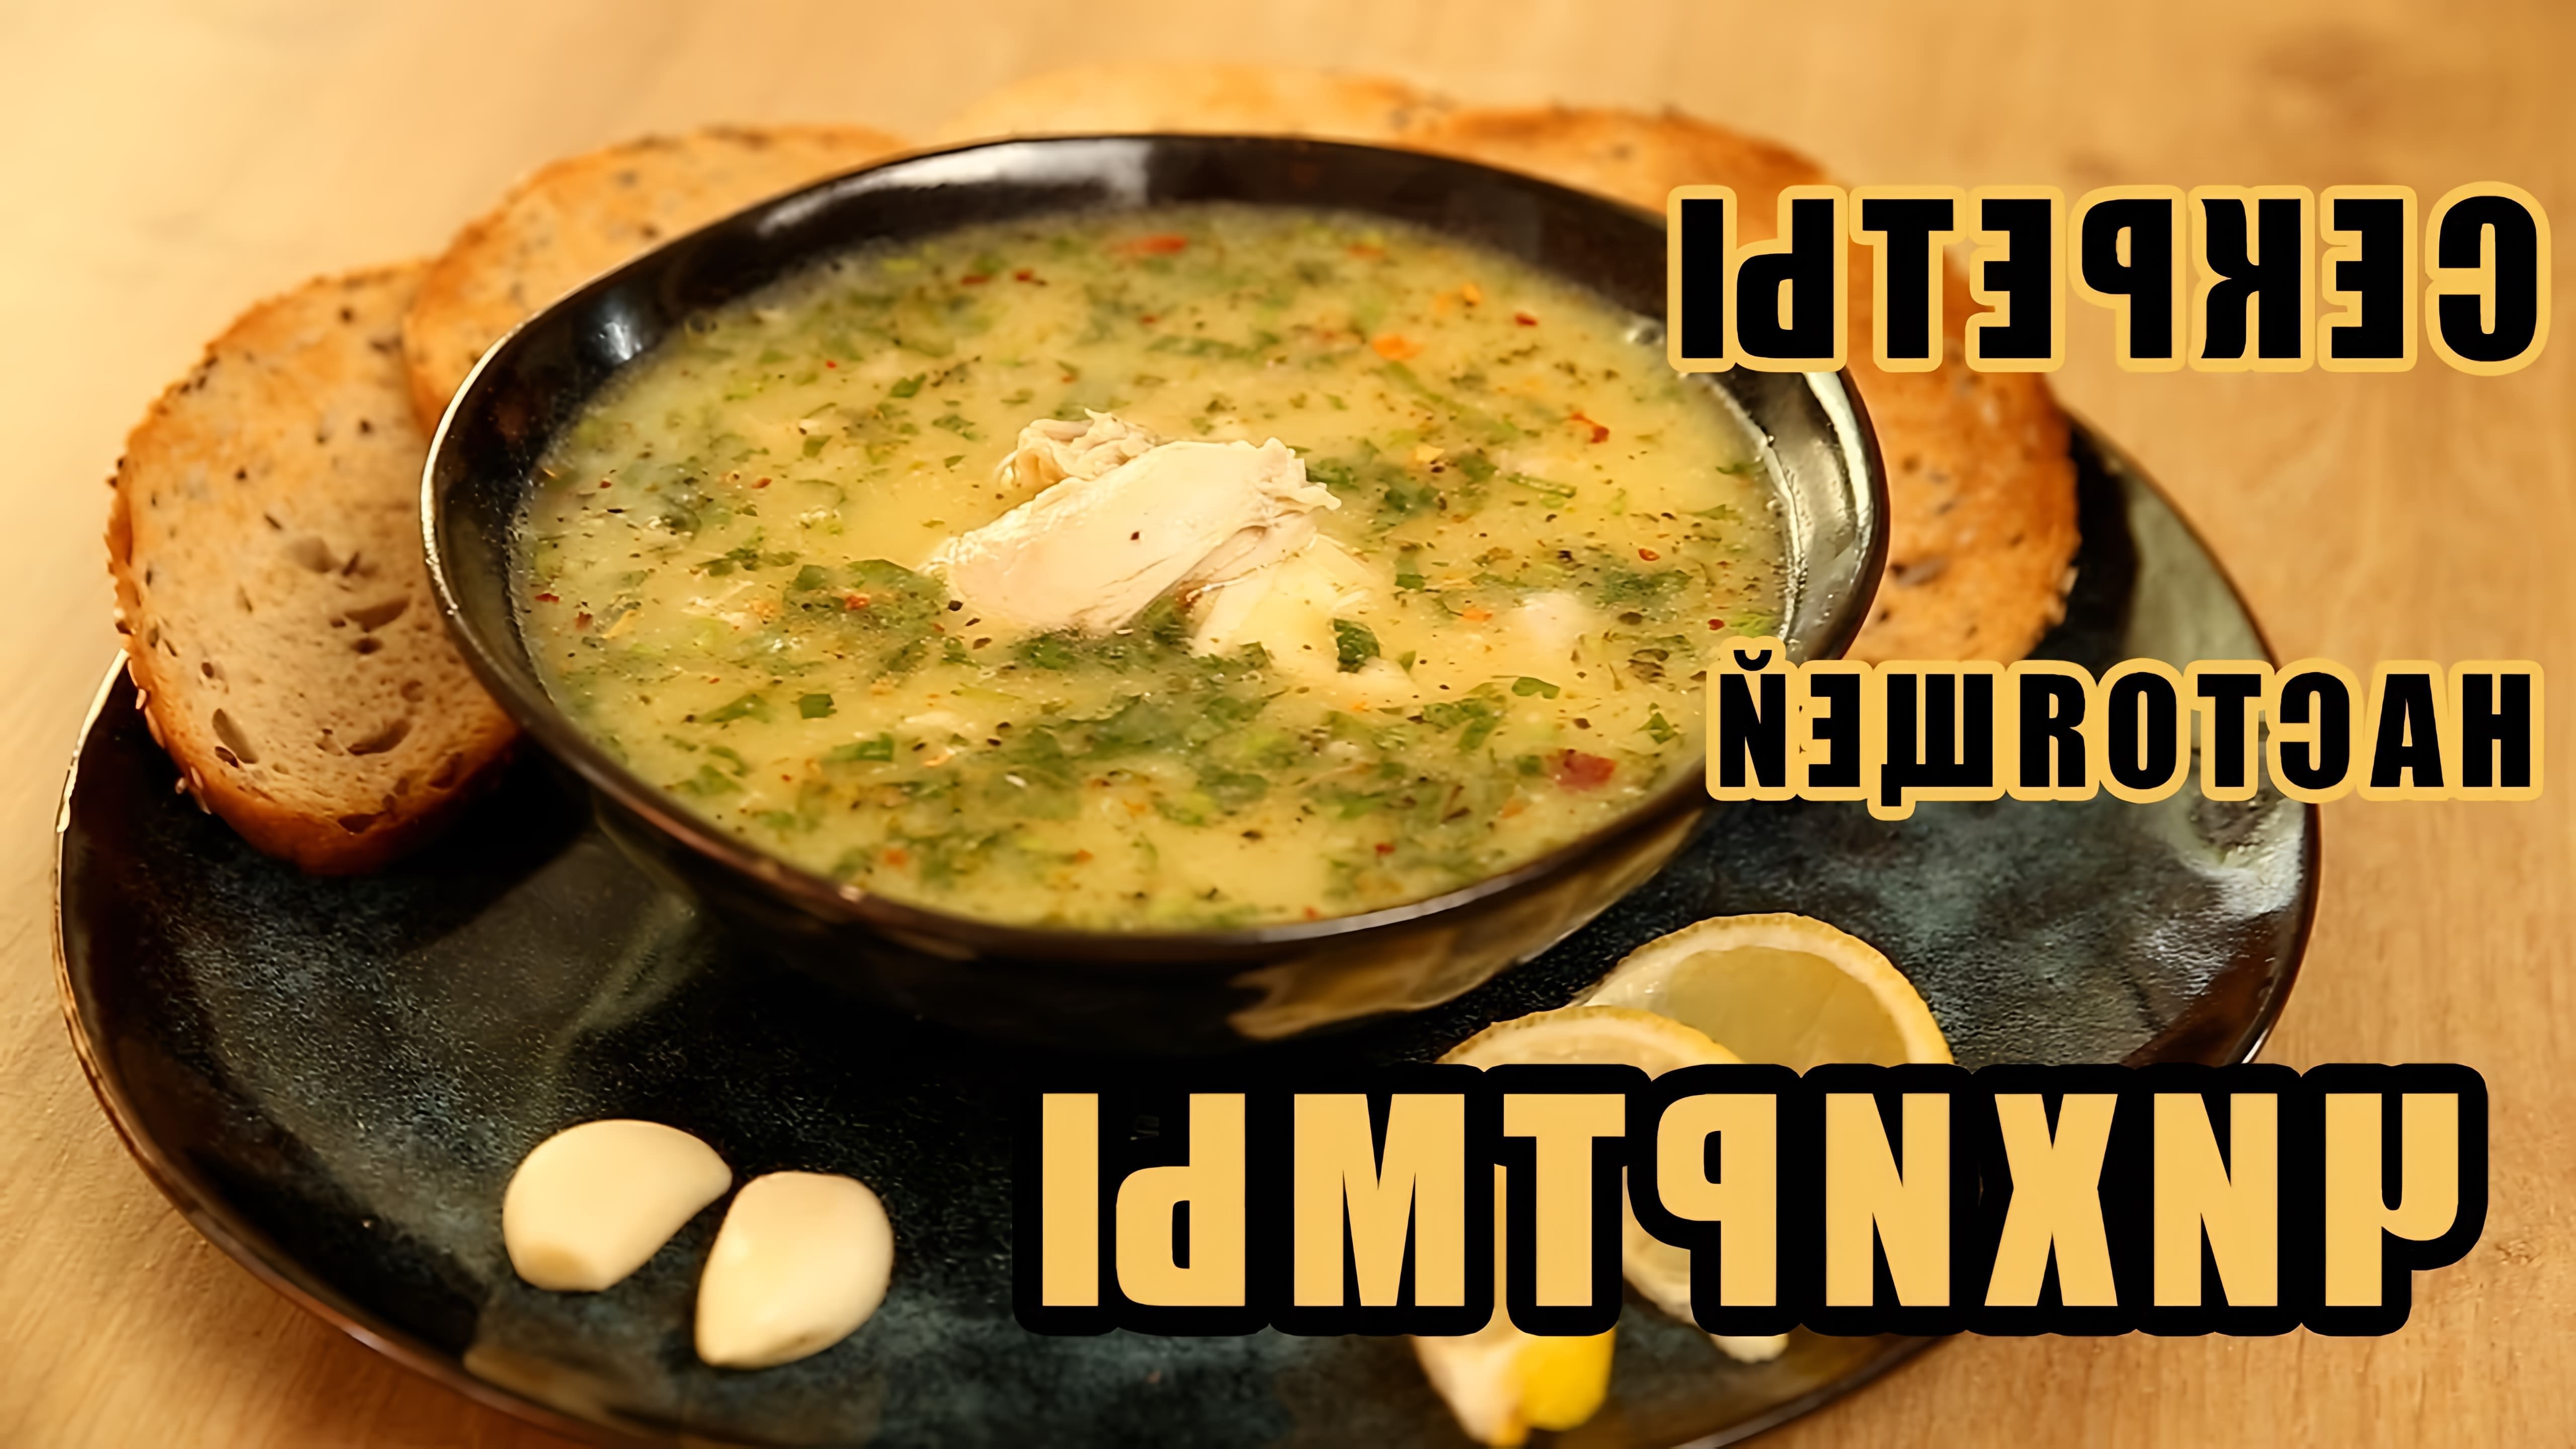 В этом видео демонстрируется процесс приготовления грузинского супа "чихиртма"